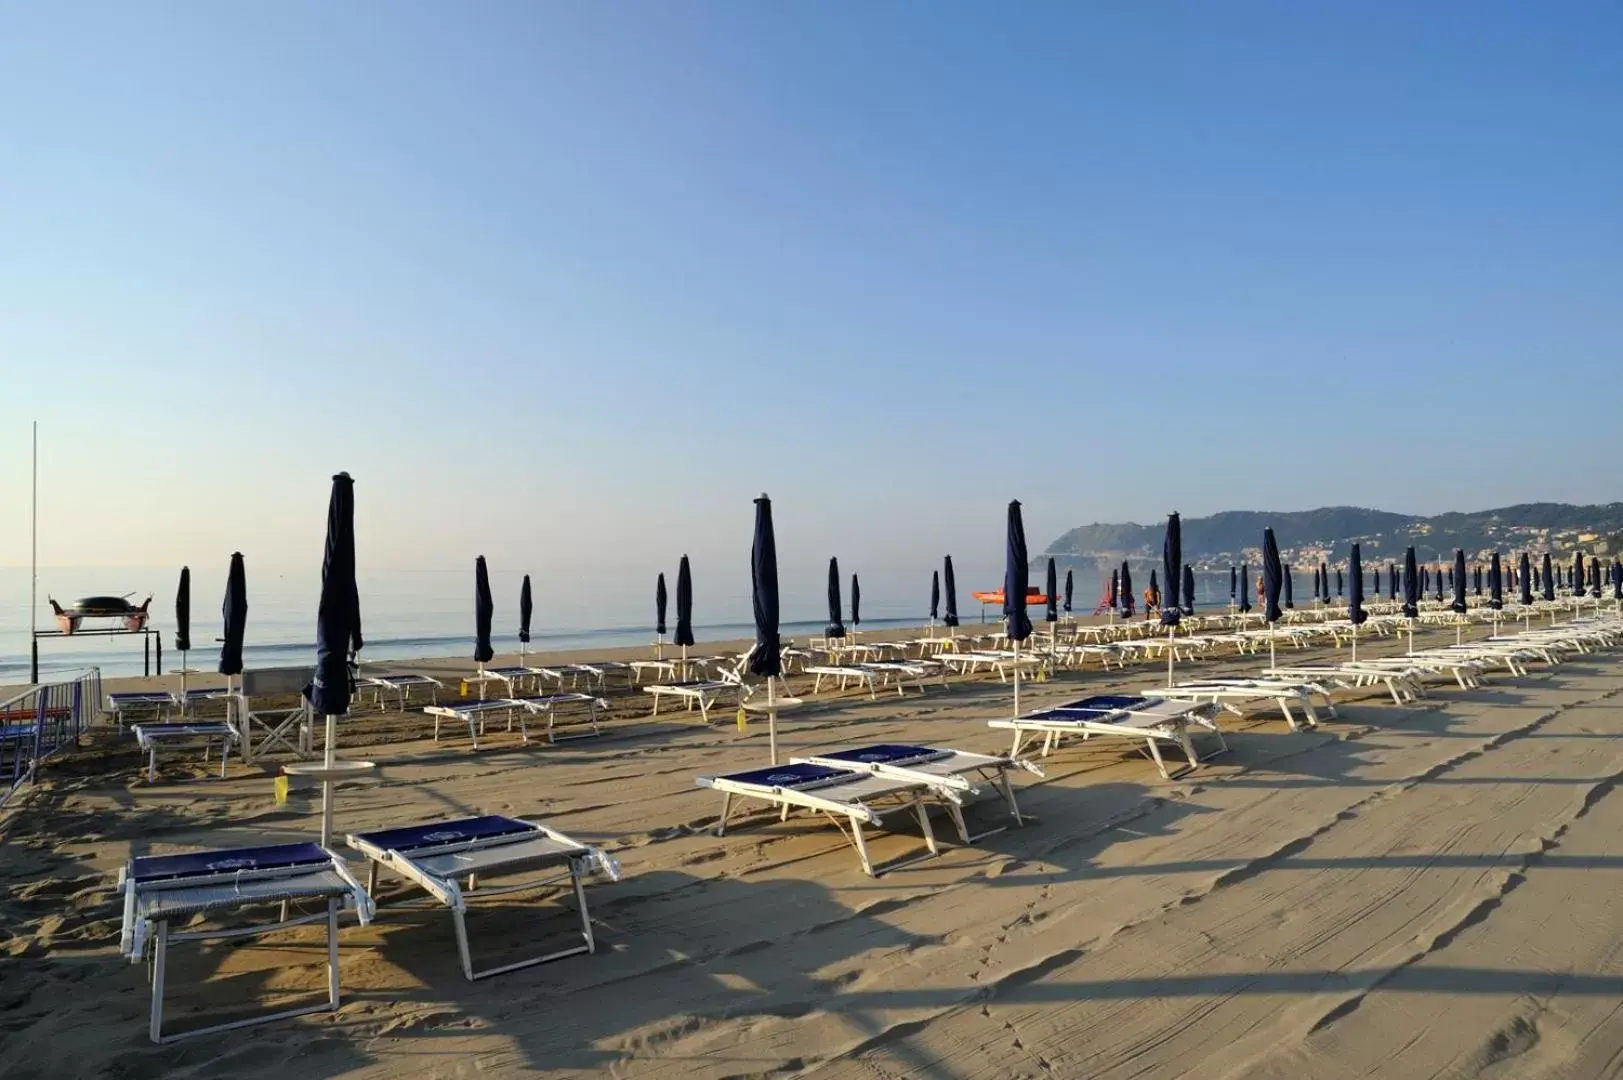 Day, Beach in Grand Hotel Mediterranee